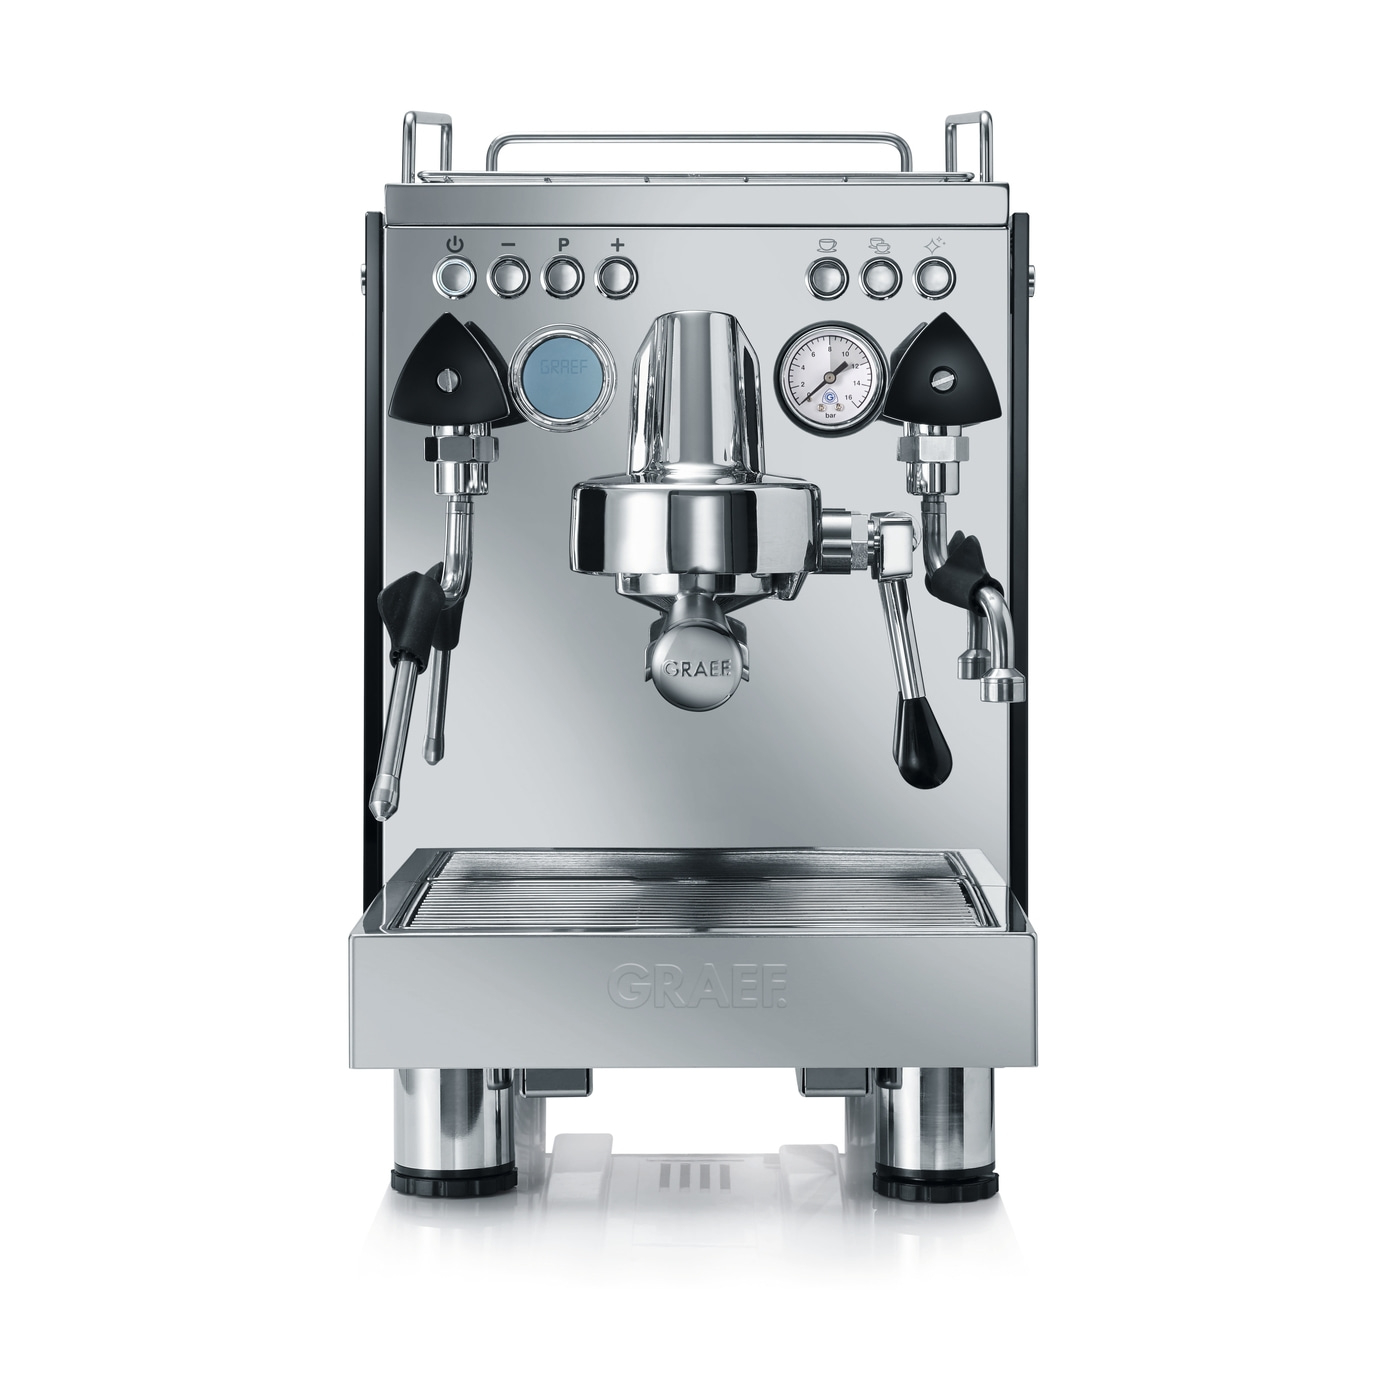 GRAEF ES1000 "Contessa" Siebträger Espressomaschine mit LCD Display